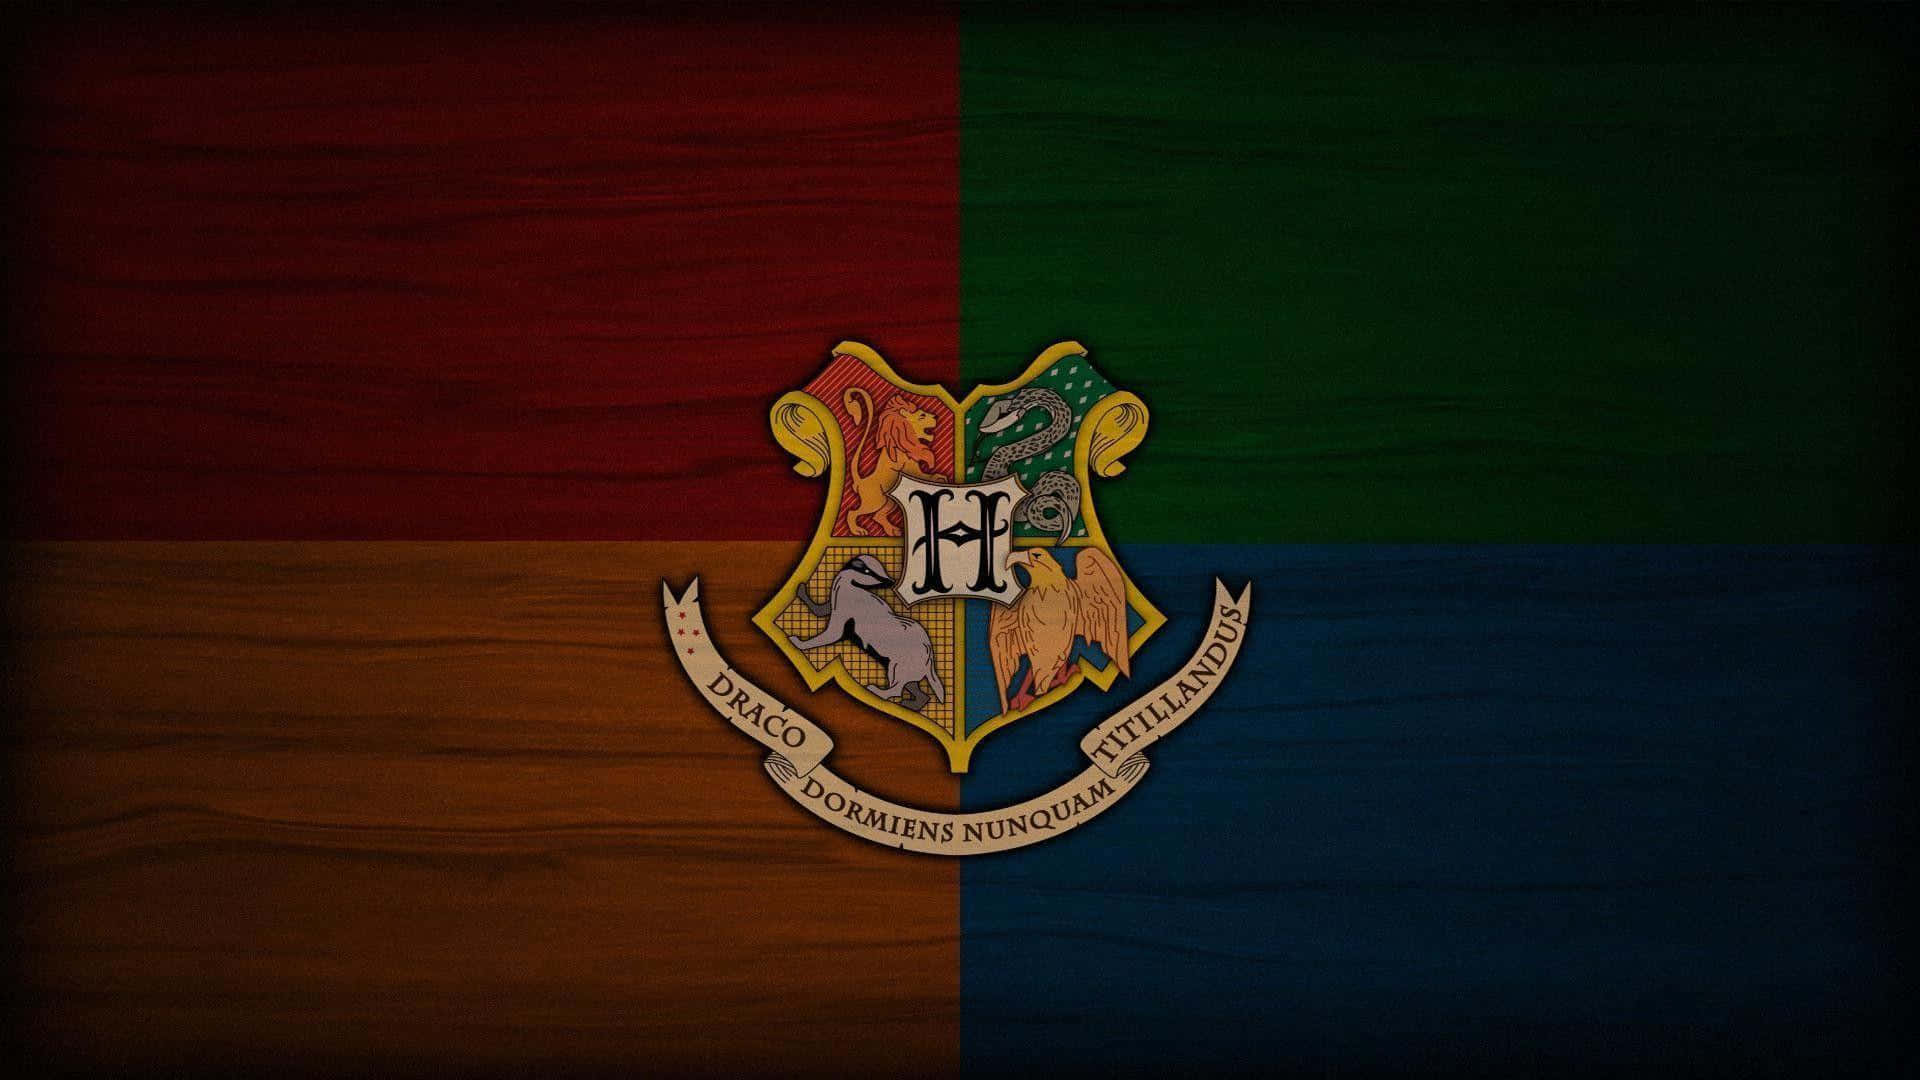 100+] Harry Potter Desktop Wallpapers